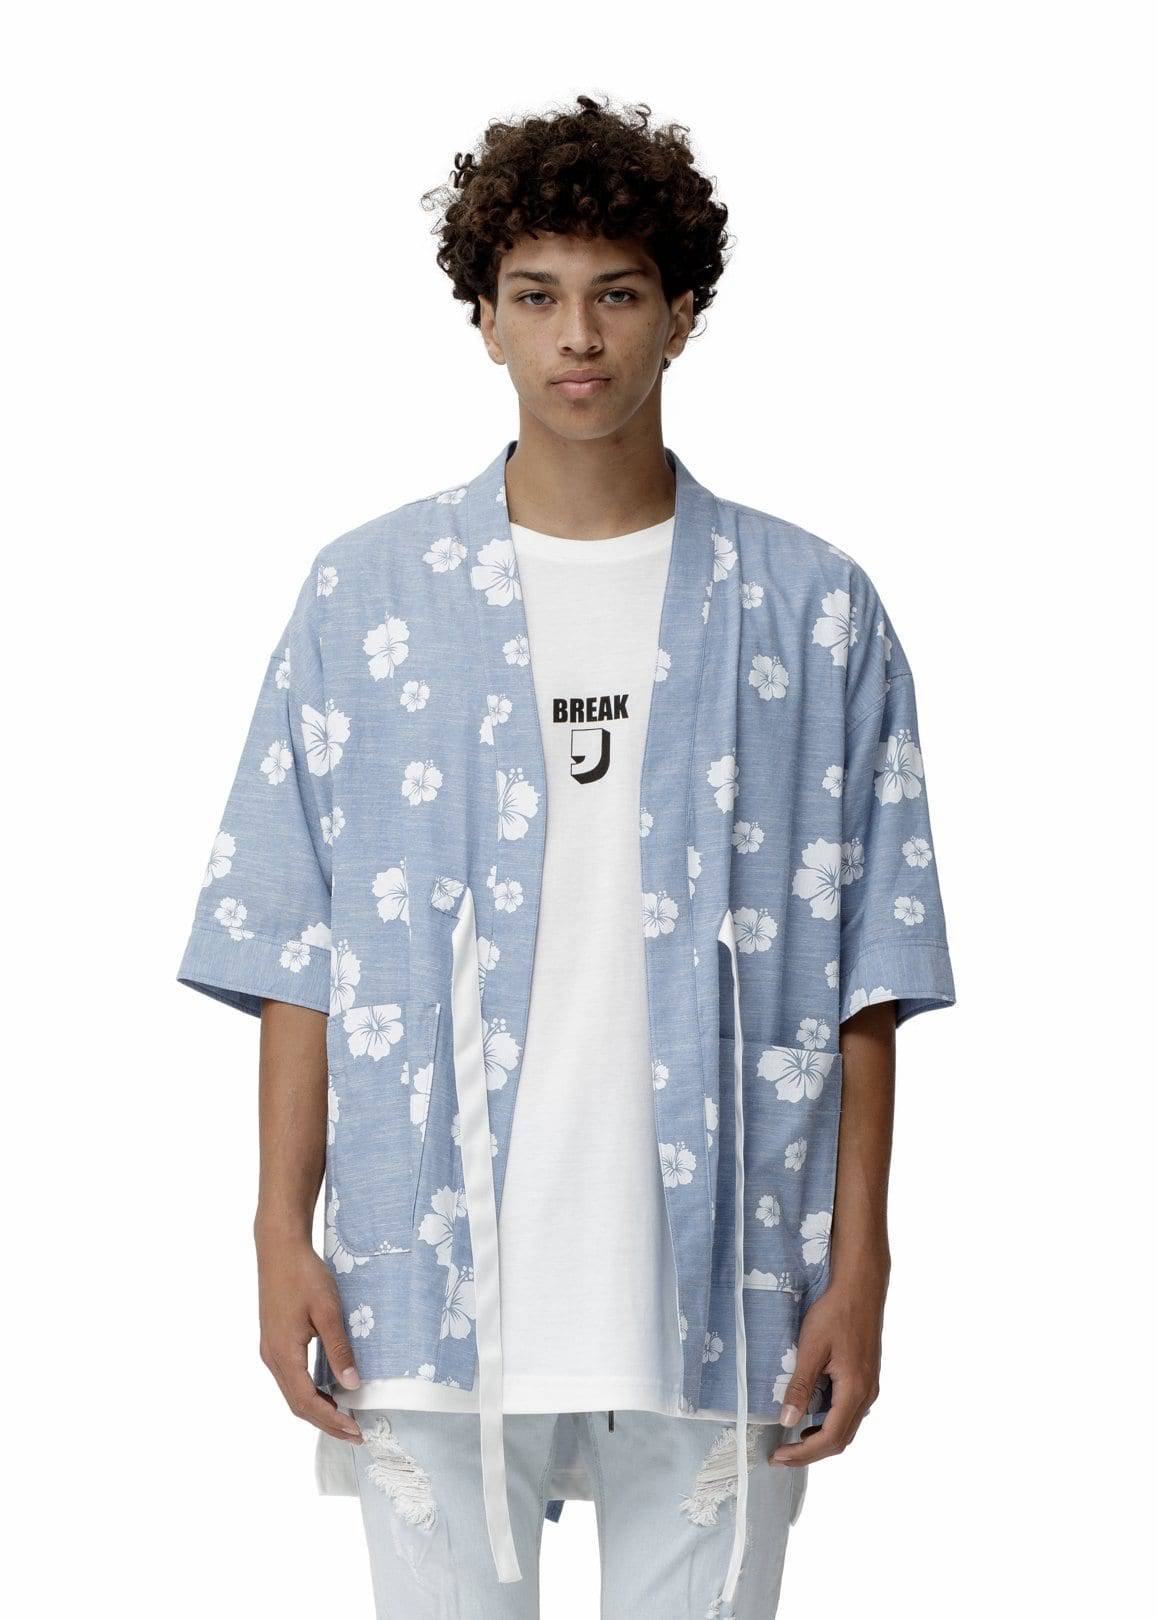 Konus Men's Kimono Shirt w/ Floral Print in Blue by Shop at Konus